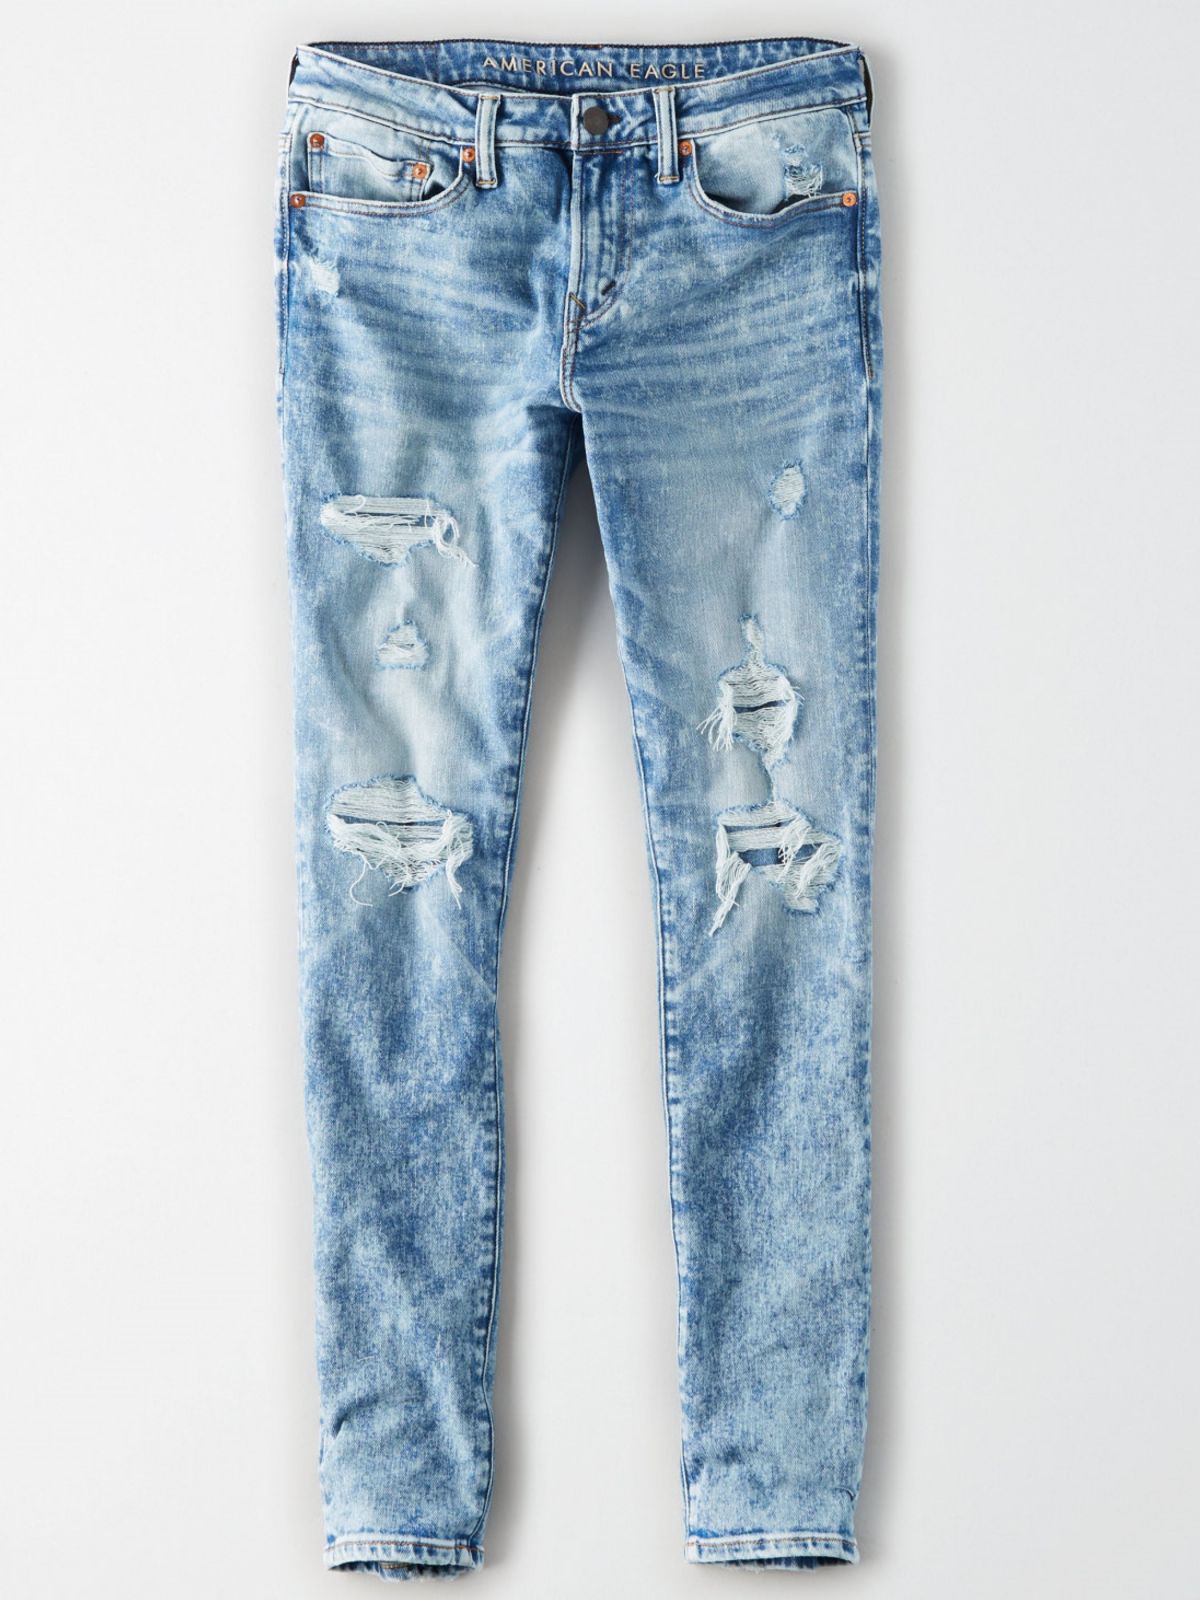  ג'ינס סלים אסיד ווש עם קרעים Airflex Slim של AMERICAN EAGLE